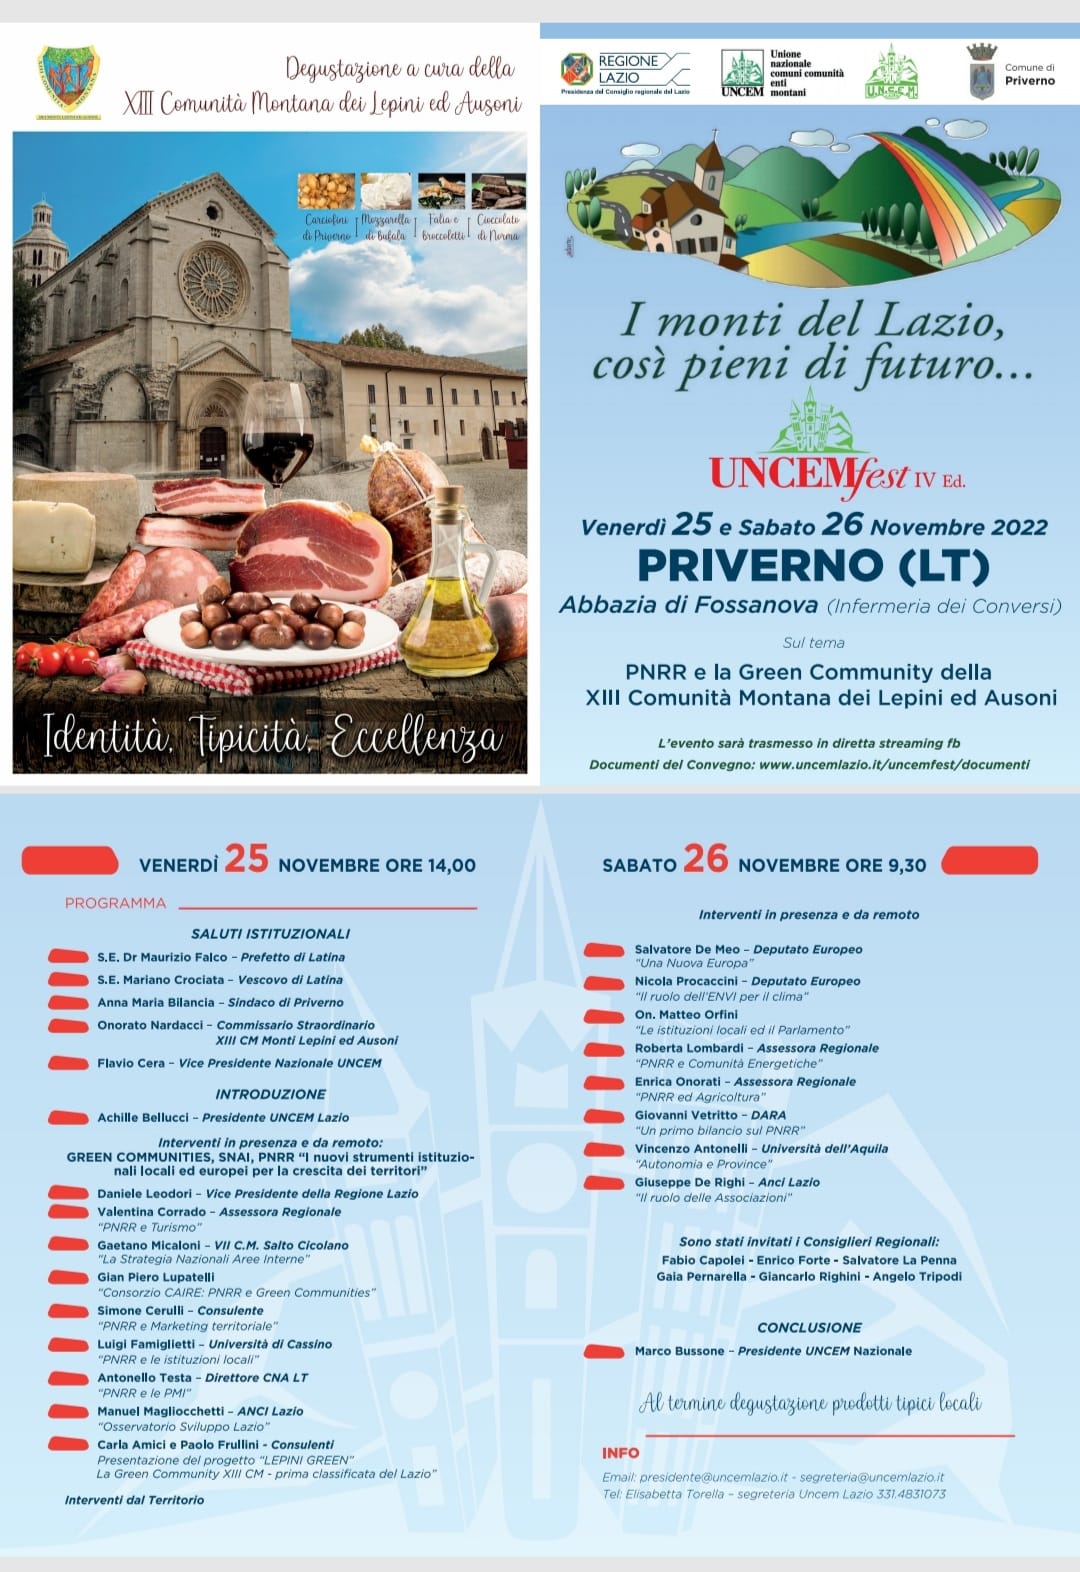 Rocca Massima: Uncem fest IV edizione @ Abbazia di Fossanova